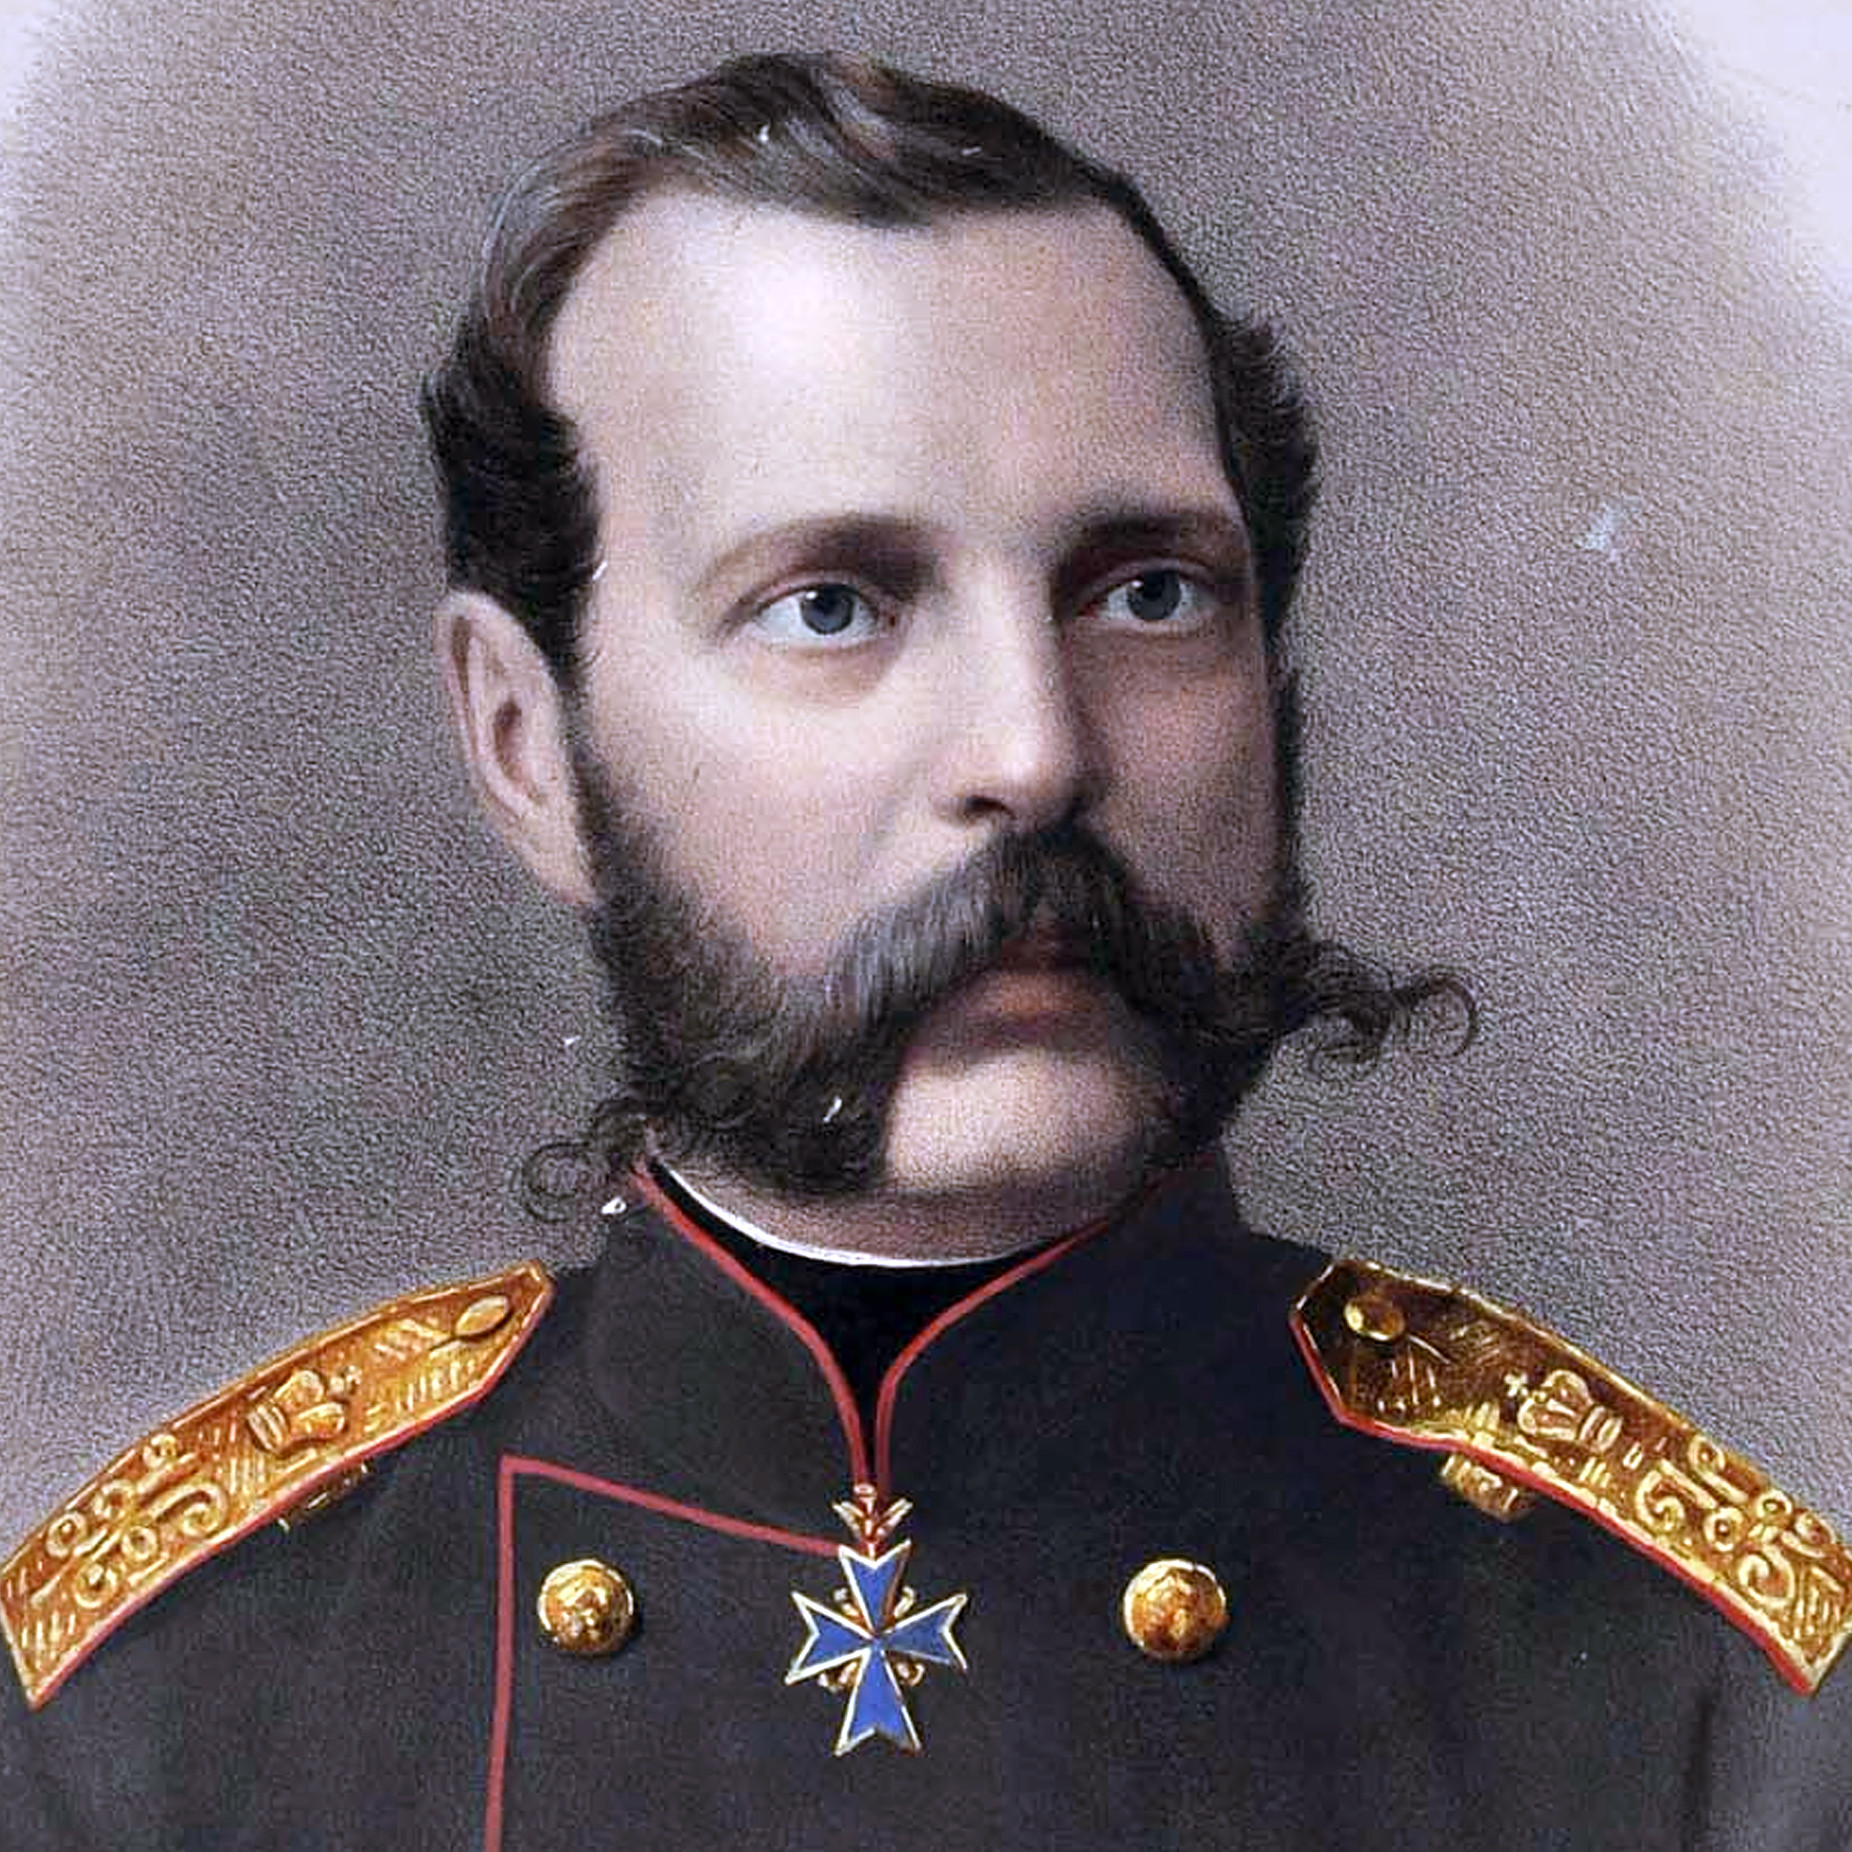 ロシアの歴史を飾った偉大なひげ ひげと指導者のイメージとの関係 ロシア ビヨンド